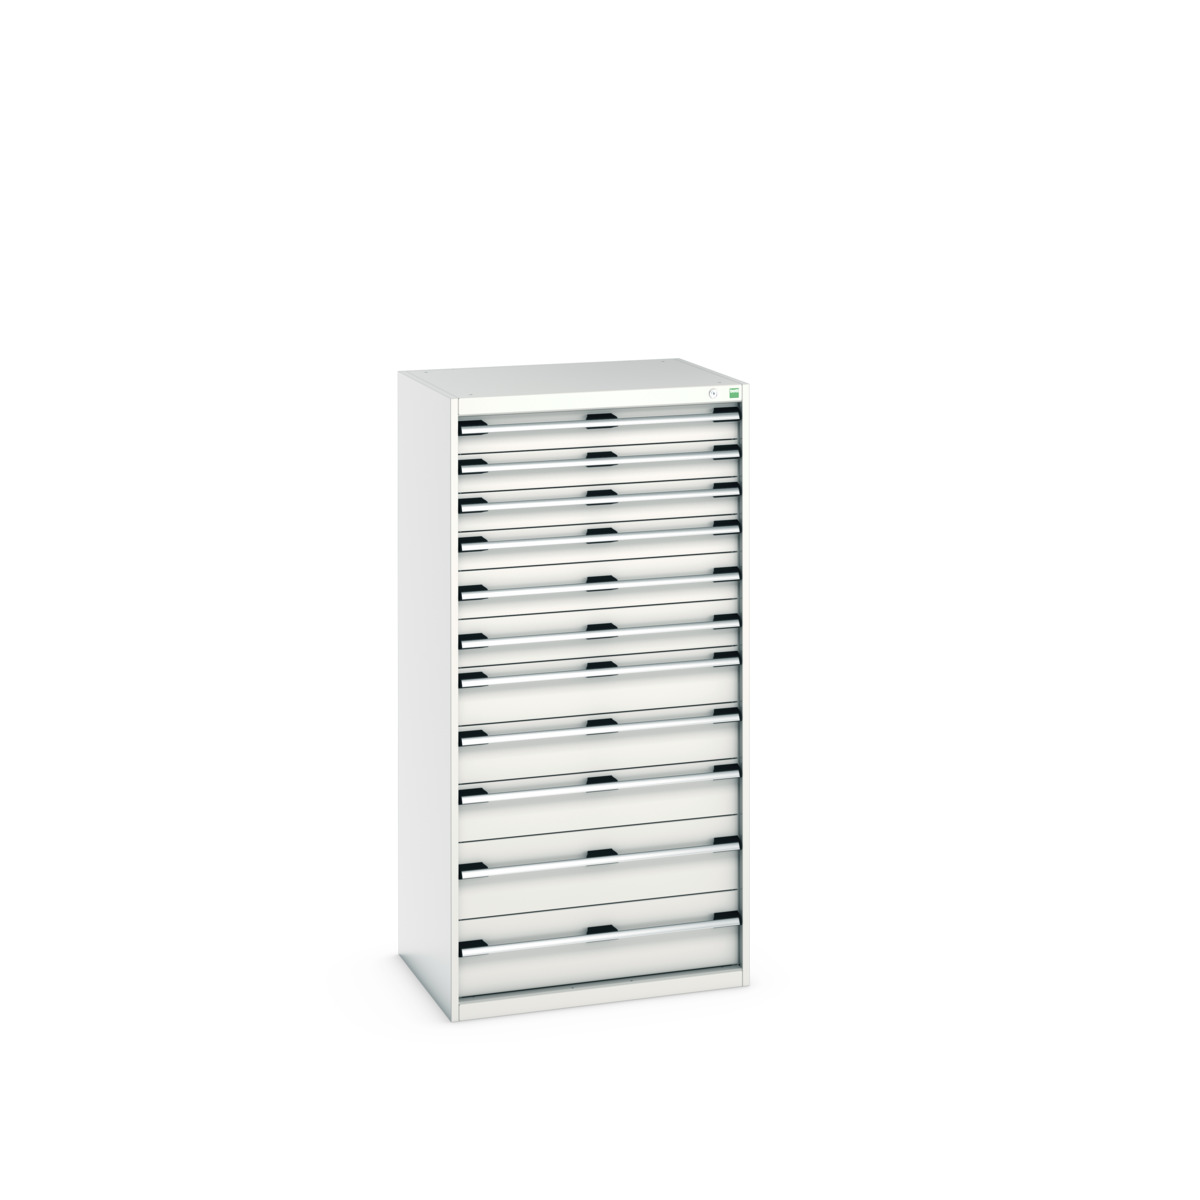 40020070.16V - cubio drawer cabinet